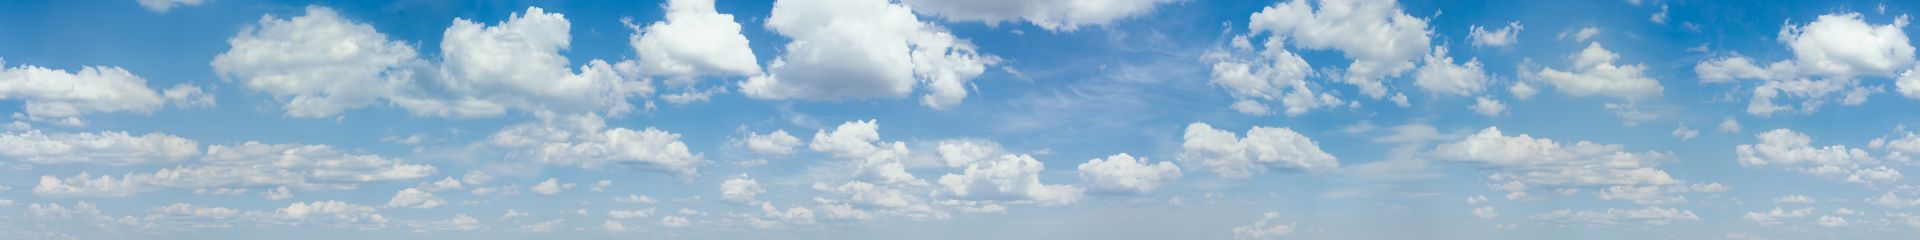 elriwa M4-H100-E - Hintergrundplatte aus PVC-Hartschaum 'Himmel mit Wolken', Höhe 100 cm, Bild E